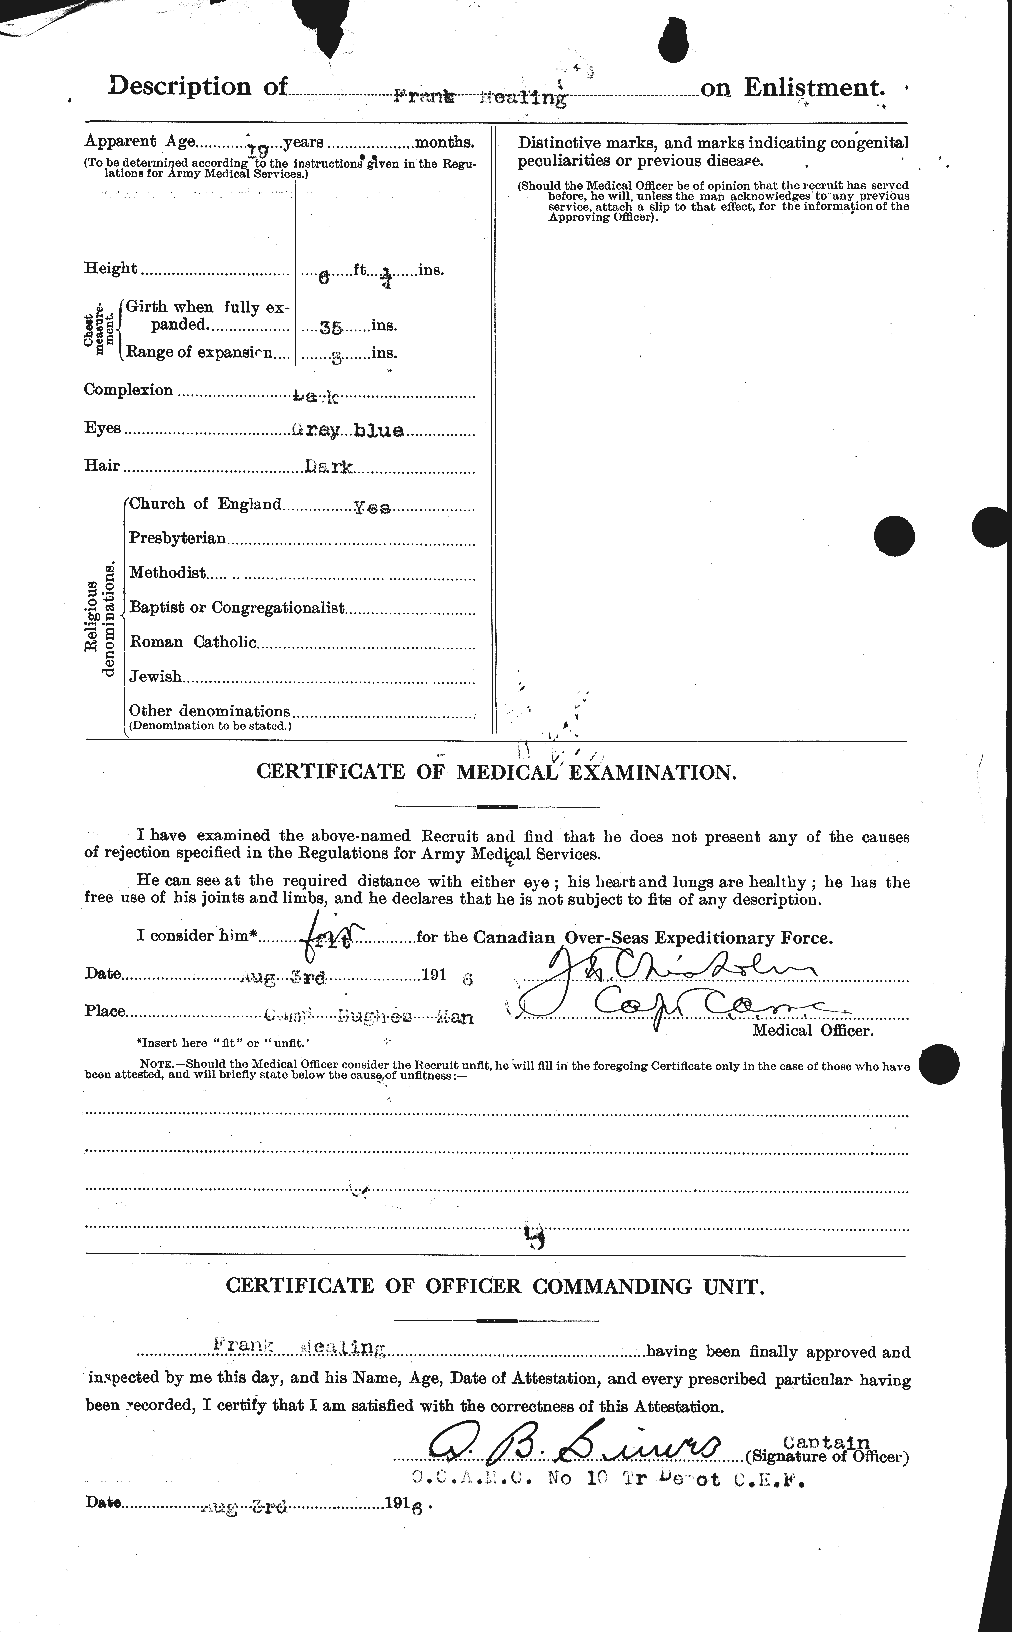 Dossiers du Personnel de la Première Guerre mondiale - CEC 489622b